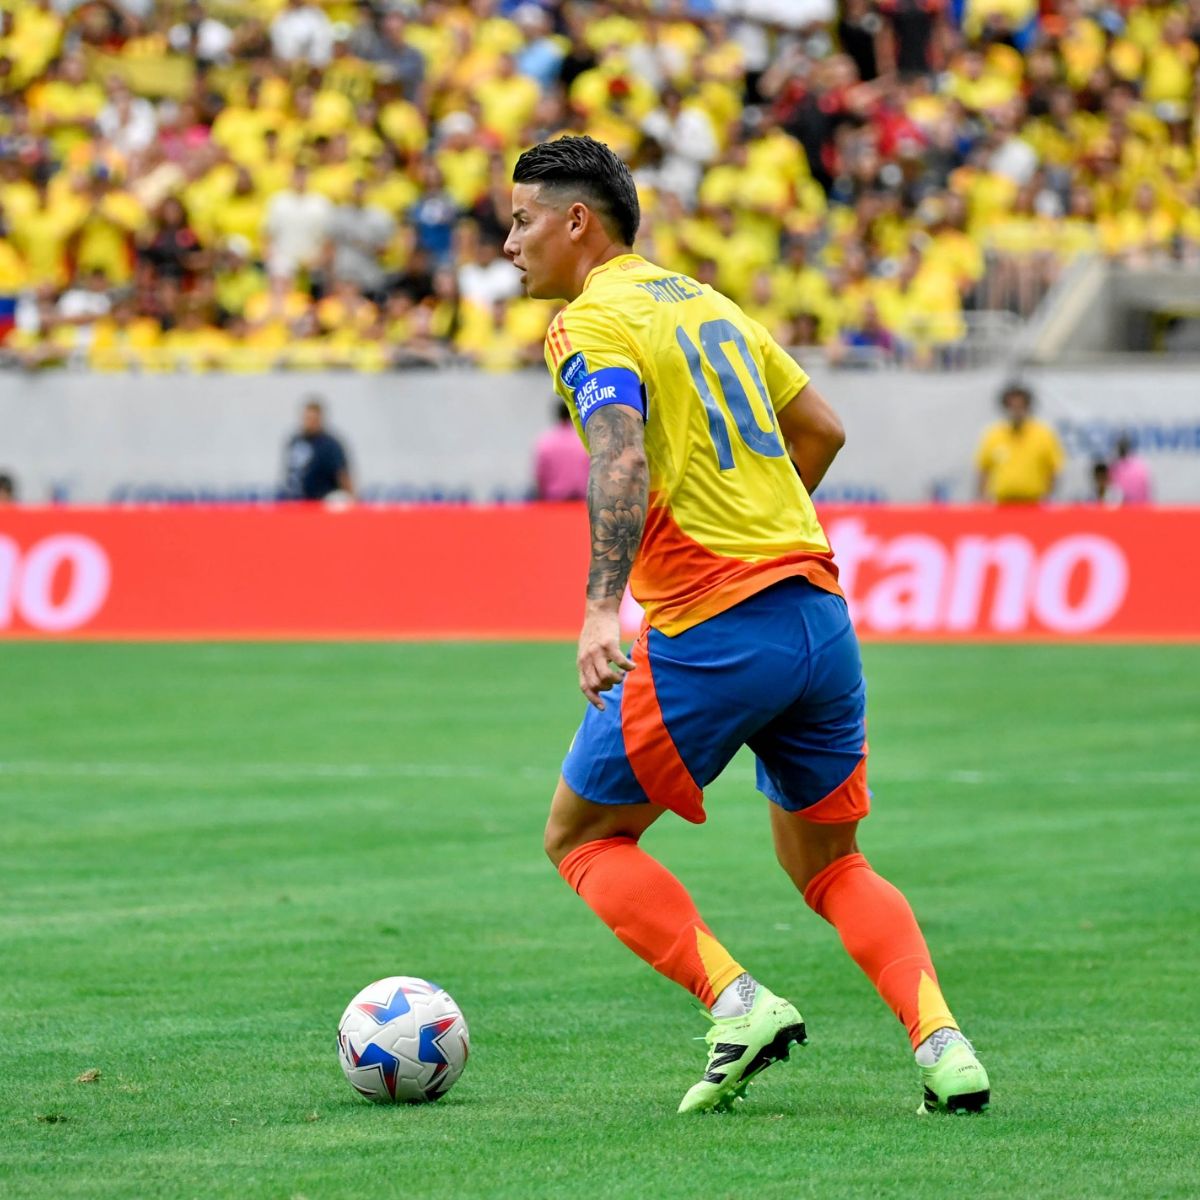 James Rodríguez selección Colombia - James Rodríguez recibió una petición de Jorge Iván Ospina para jugar en América de Cali; propuso vaca